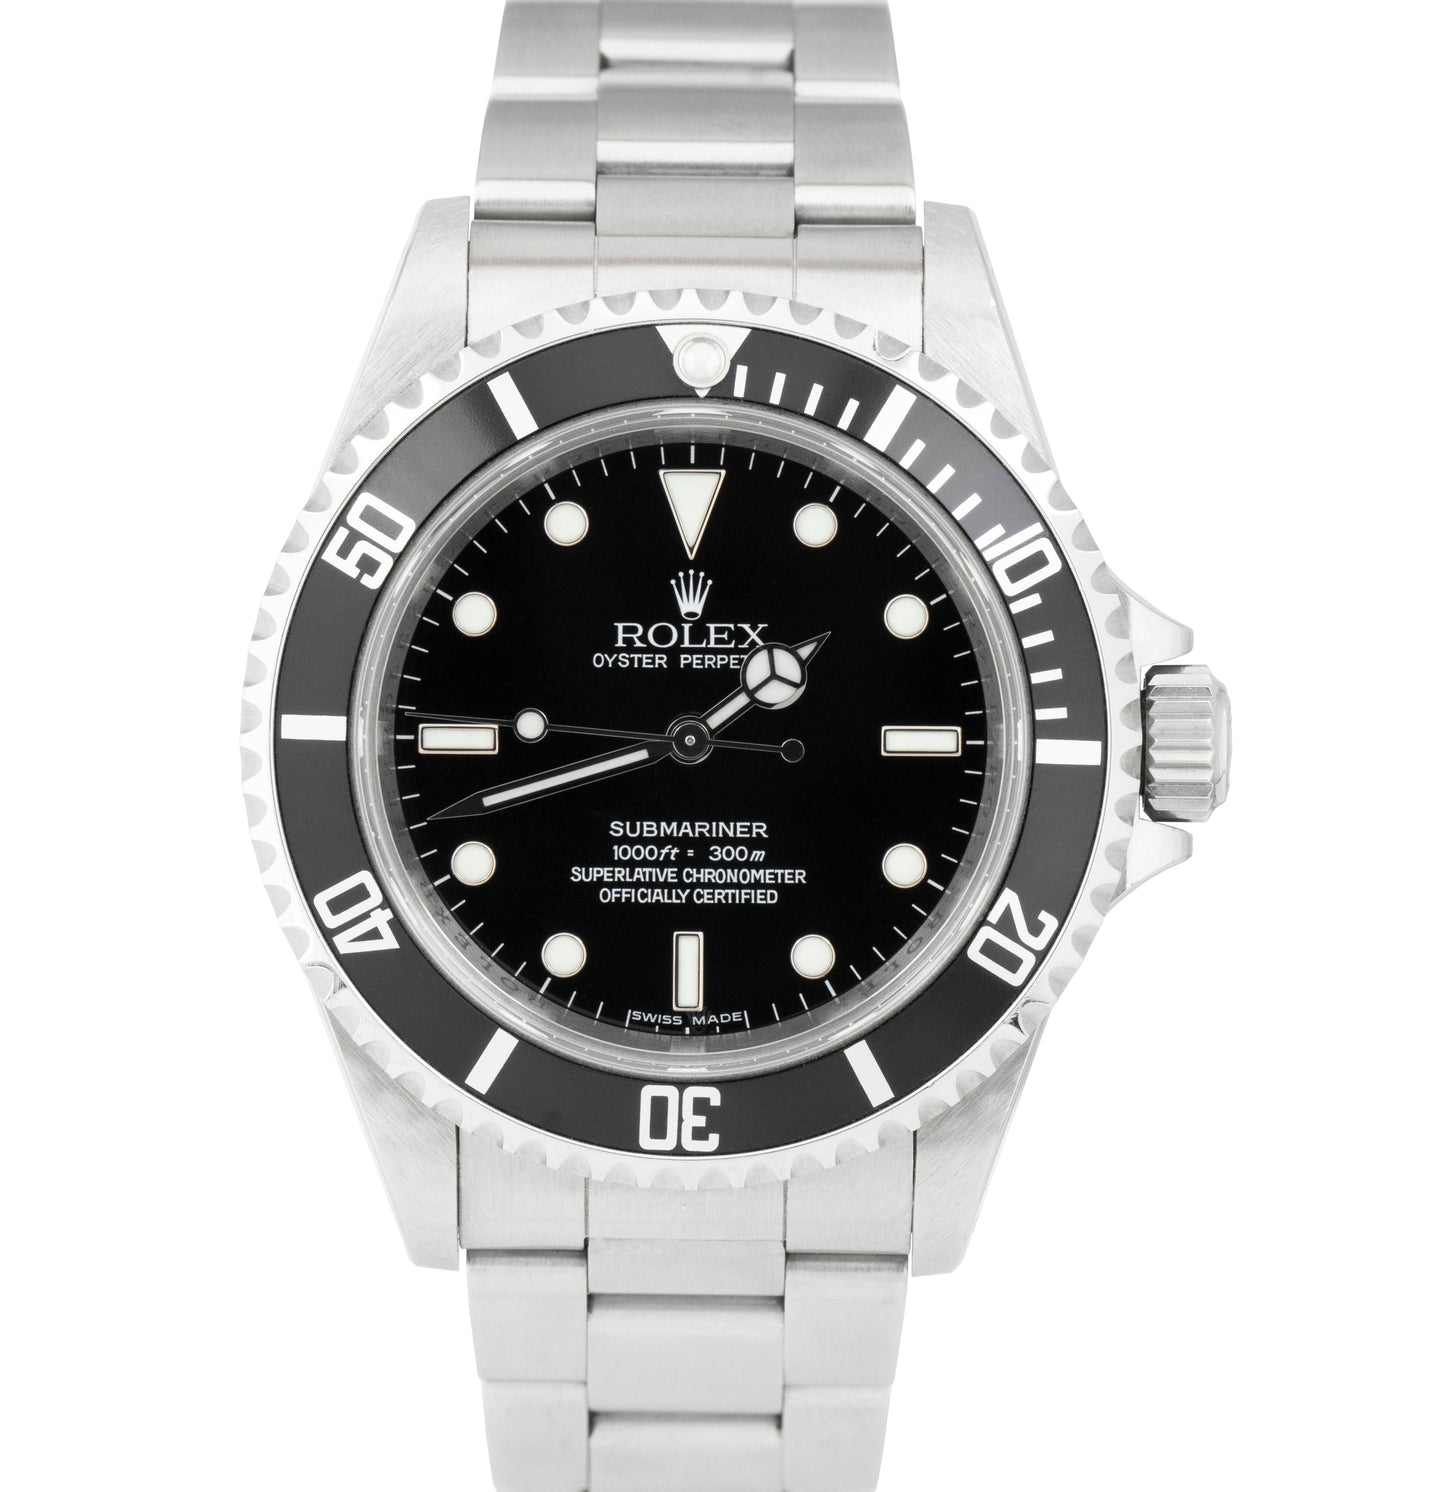 UNPOL REHAUT Rolex Submariner No-Date Black 40mm Stainless Steel Watch 14060 M